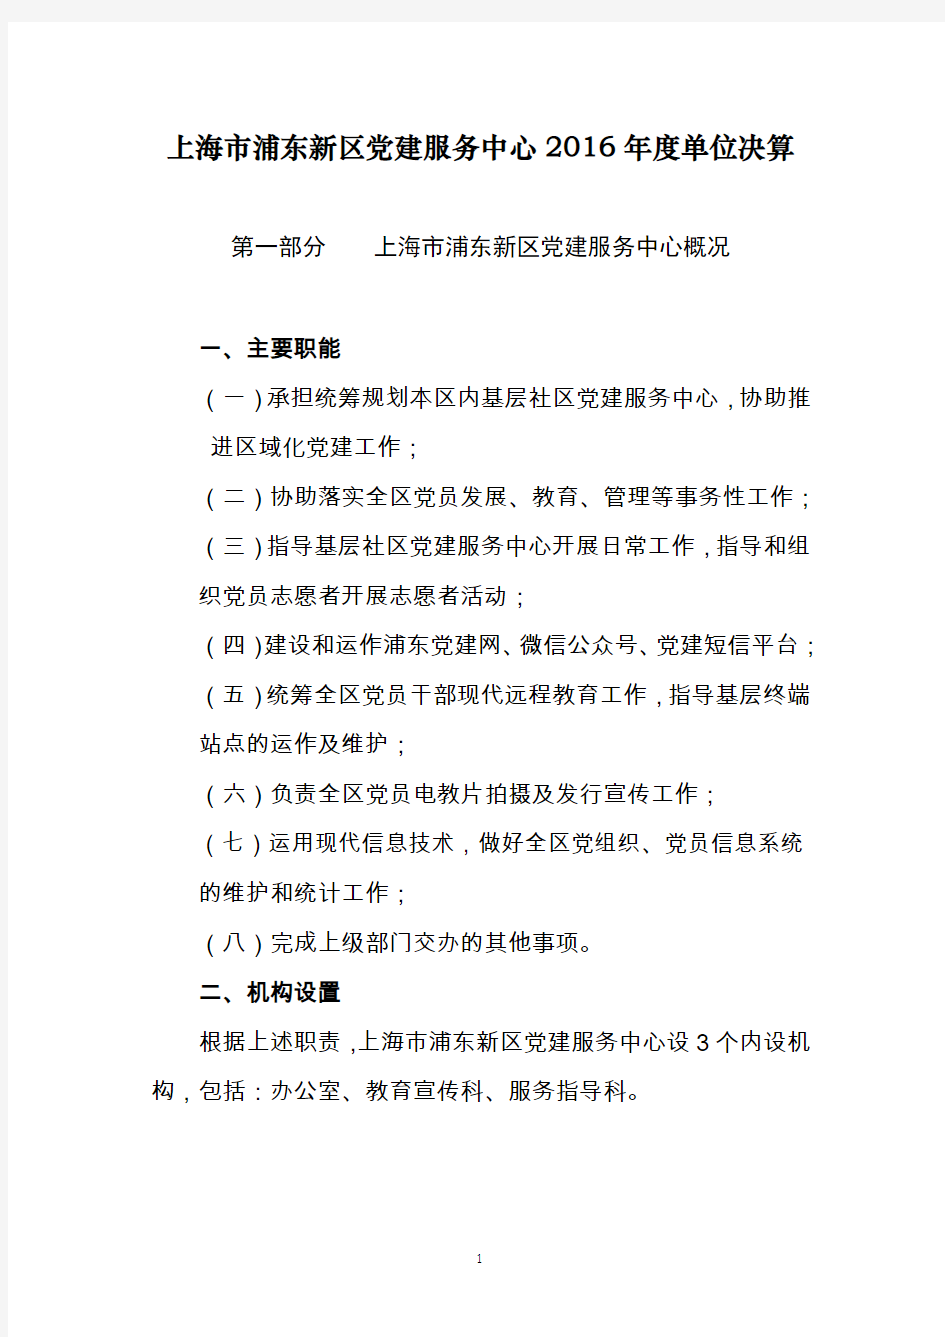 上海浦东新区党建服务中心2016单位决算